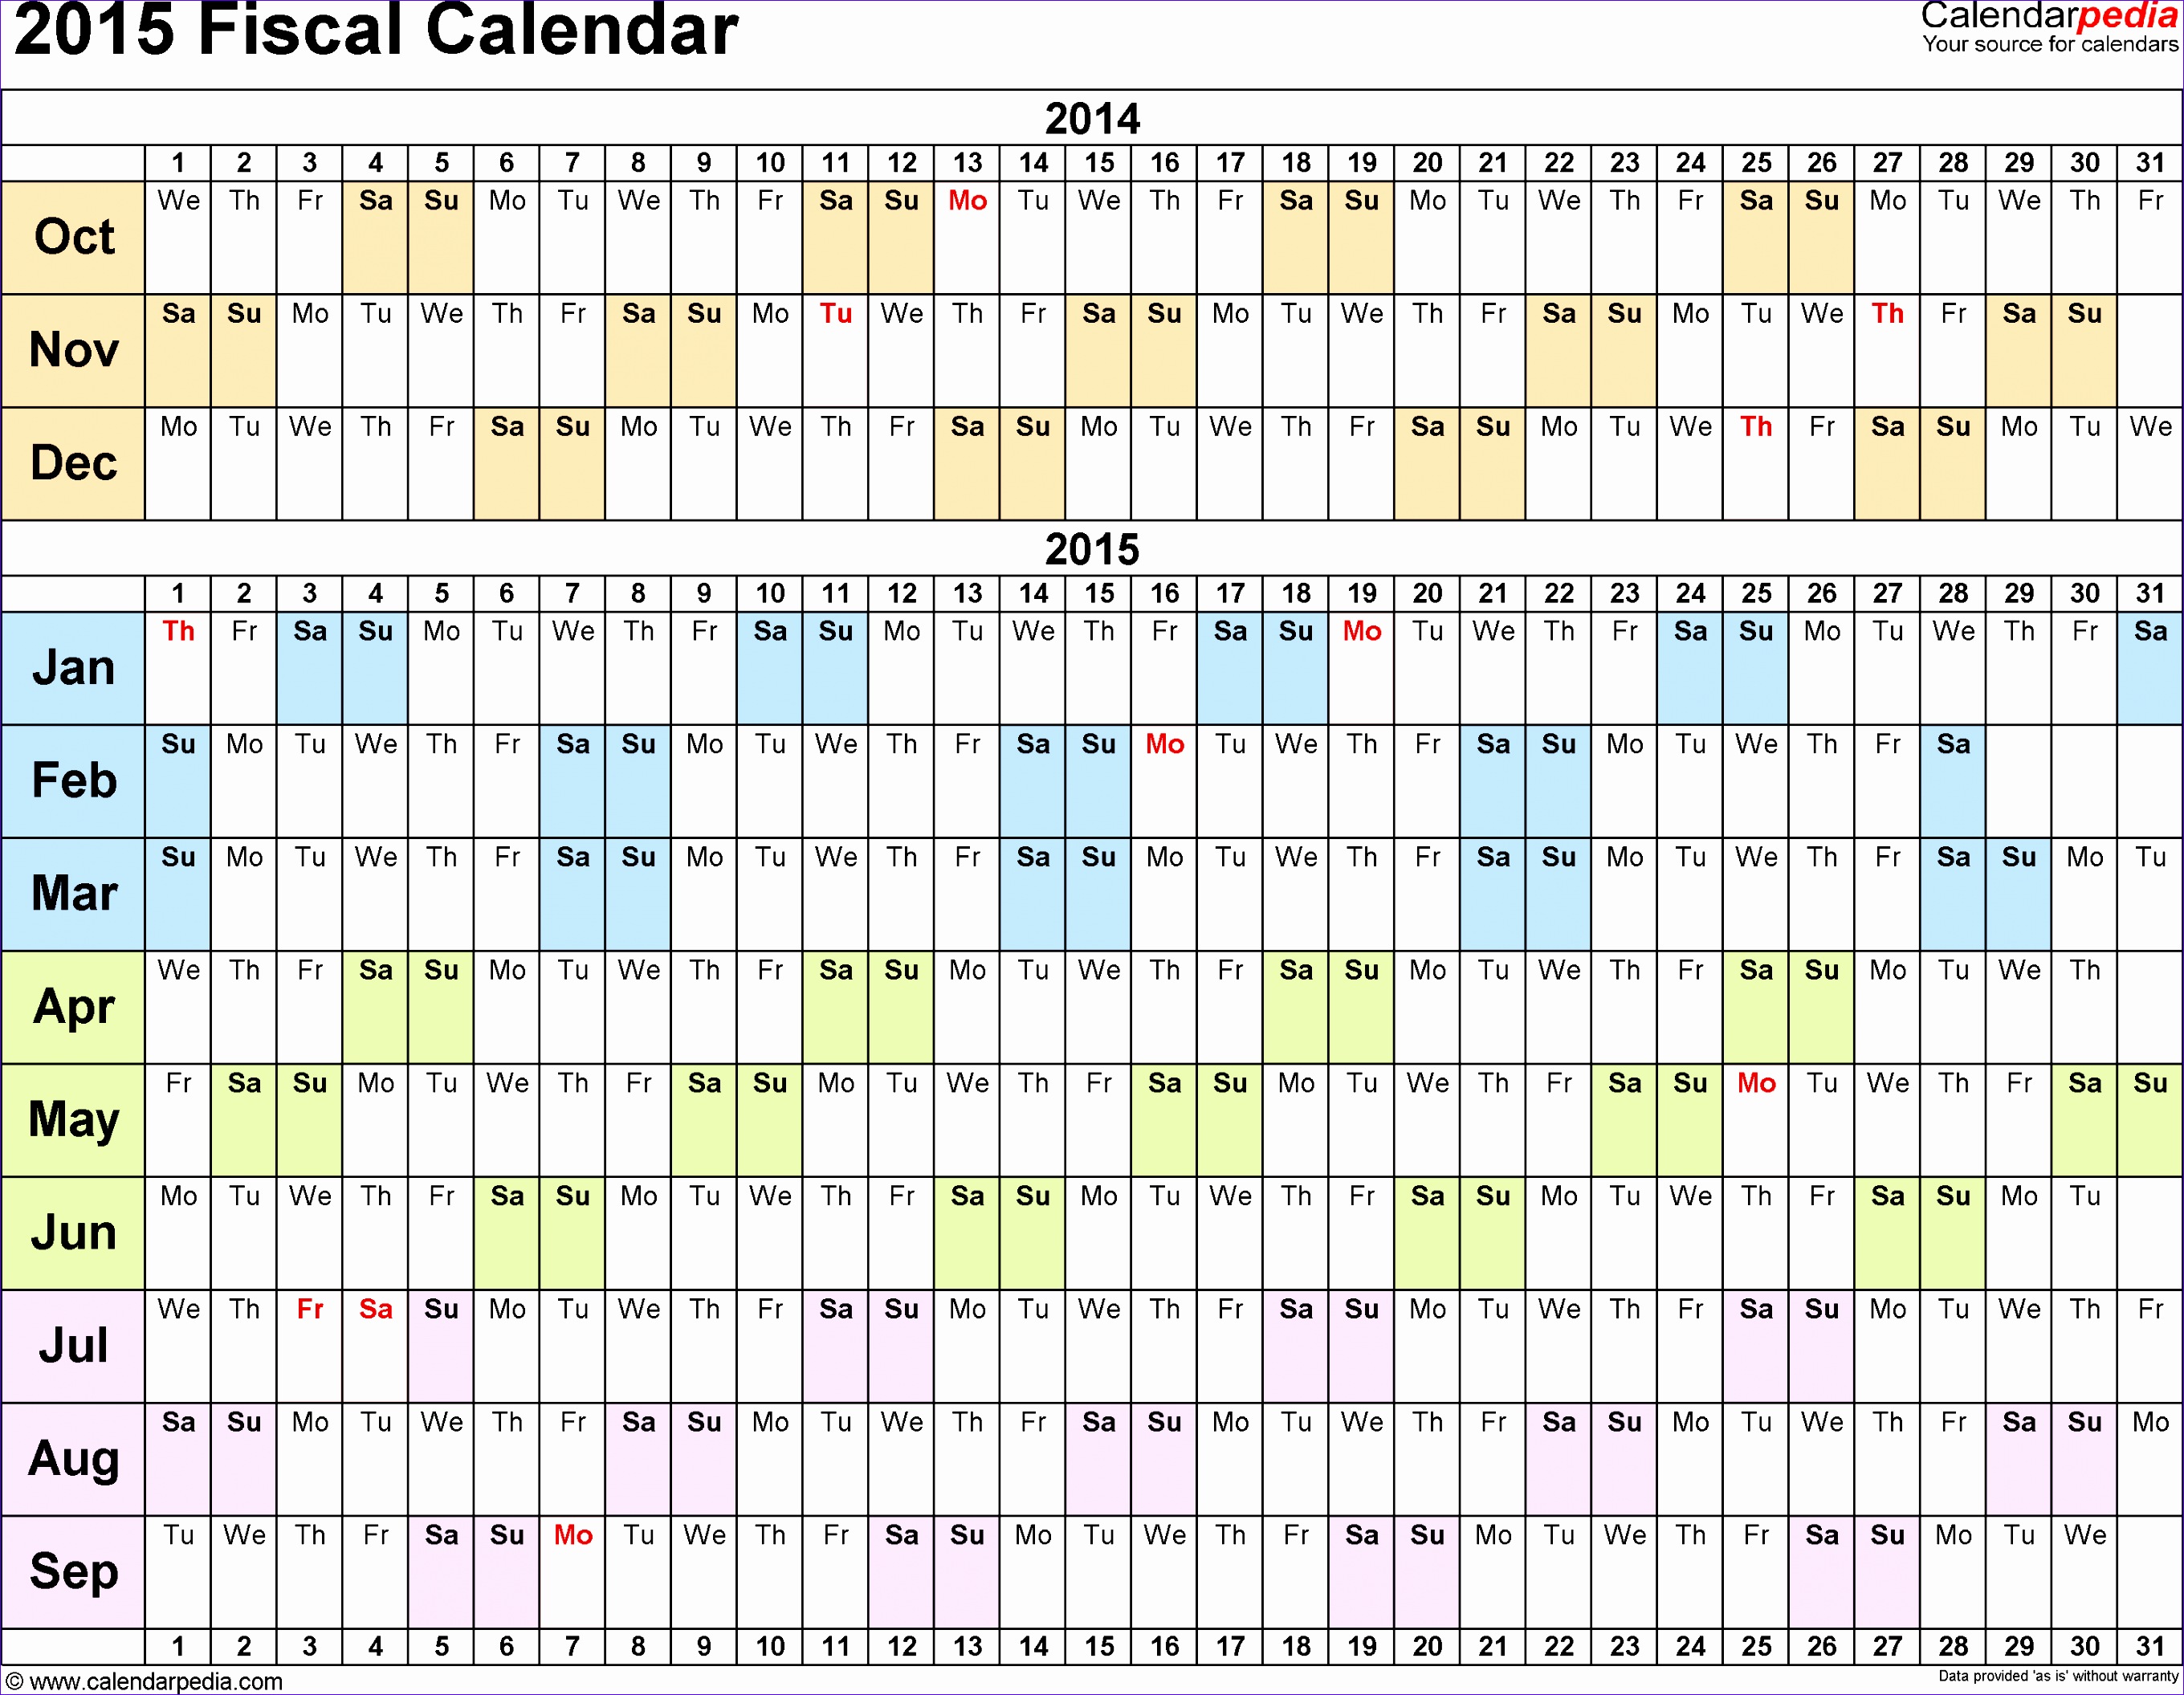 2015 fiscal calendar